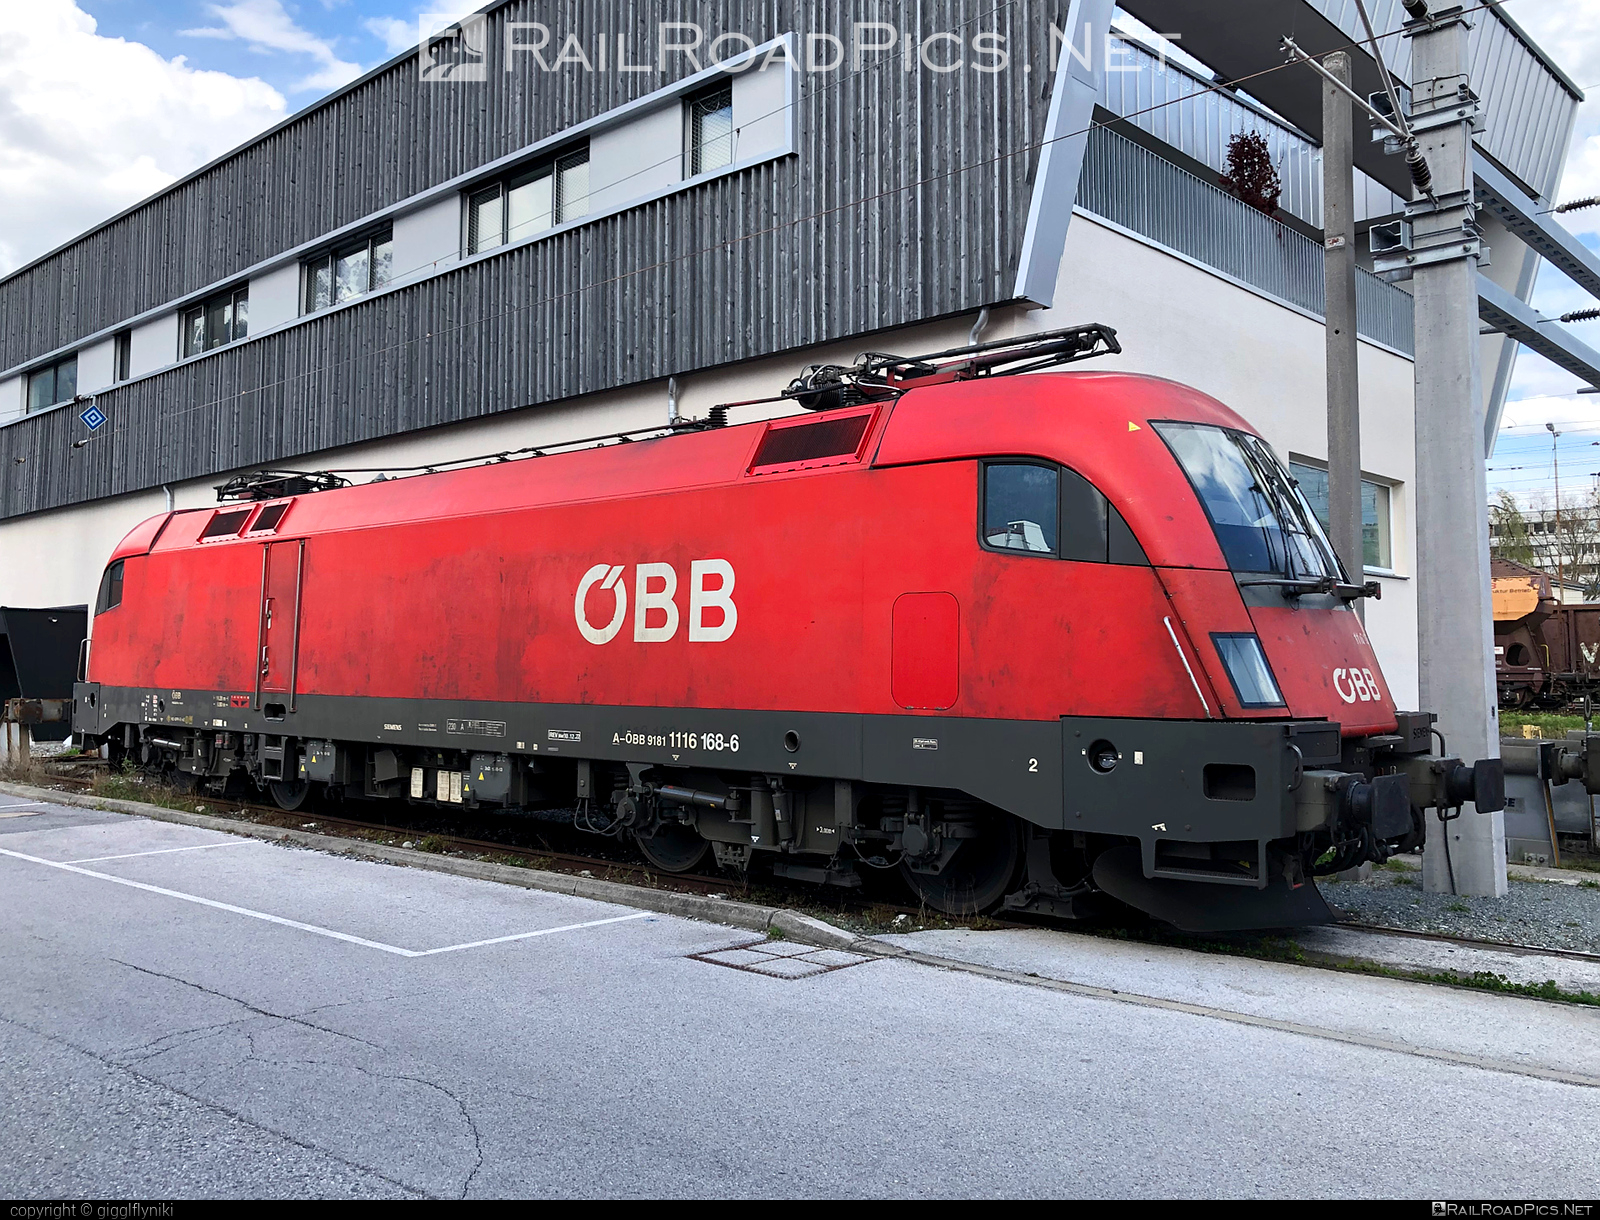 Siemens ES 64 U2 - 1116 168 operated by Österreichische Bundesbahnen #es64 #es64u2 #eurosprinter #obb #osterreichischebundesbahnen #siemens #siemensEs64 #siemensEs64u2 #siemenstaurus #taurus #tauruslocomotive